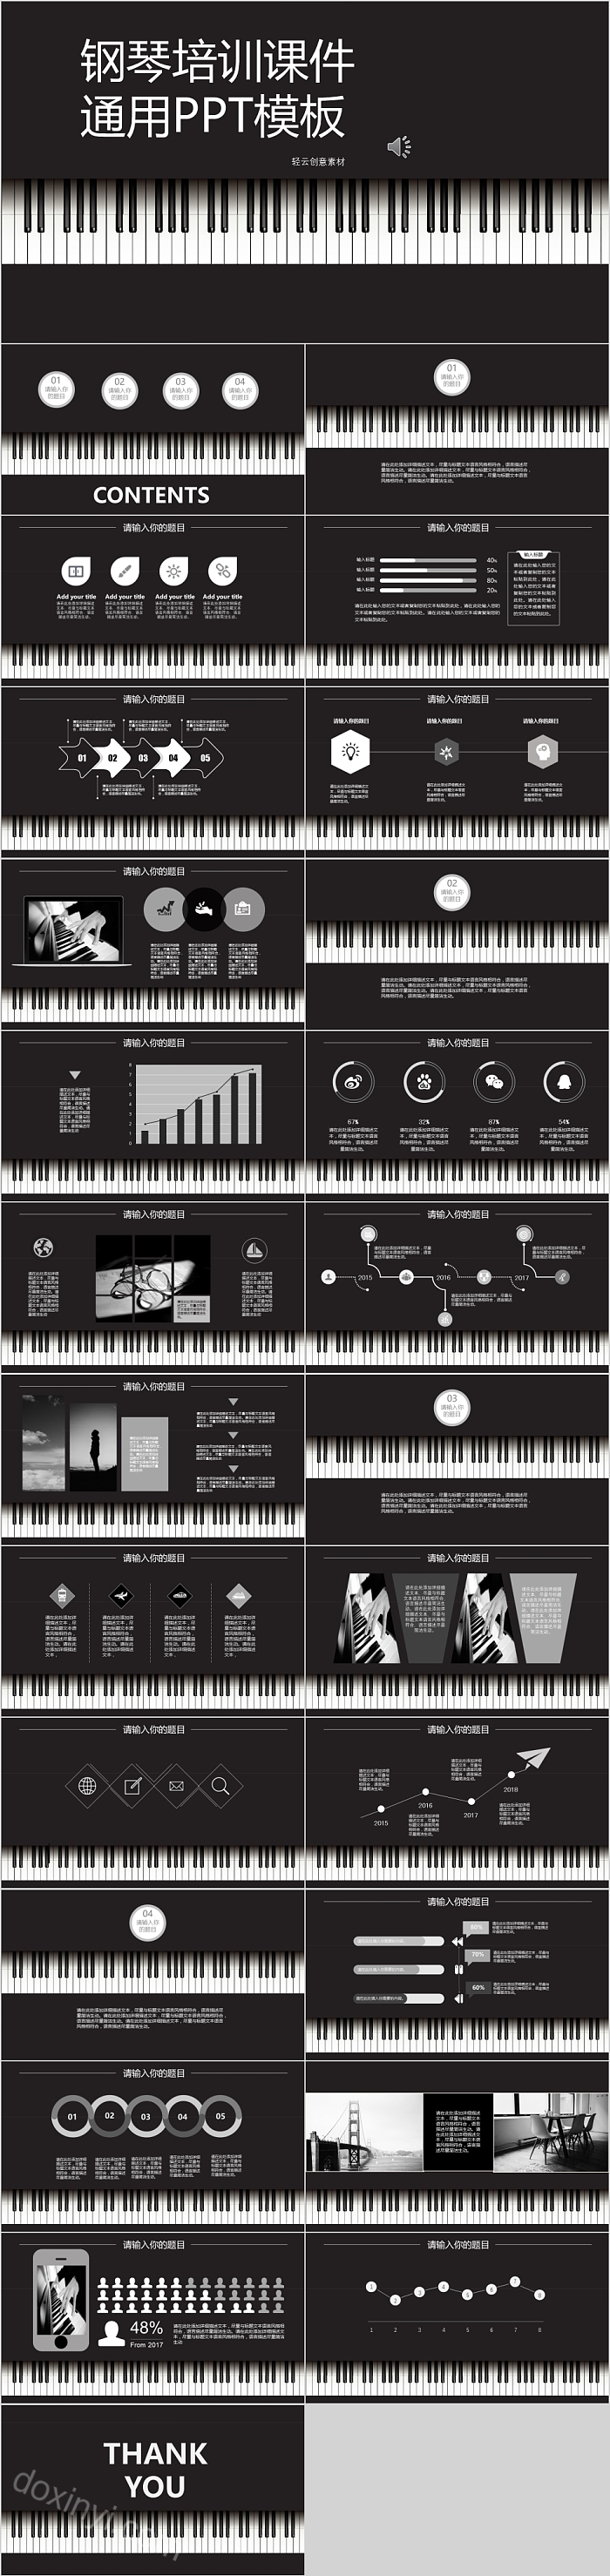 黑白钢琴培训课件通用PPT模板